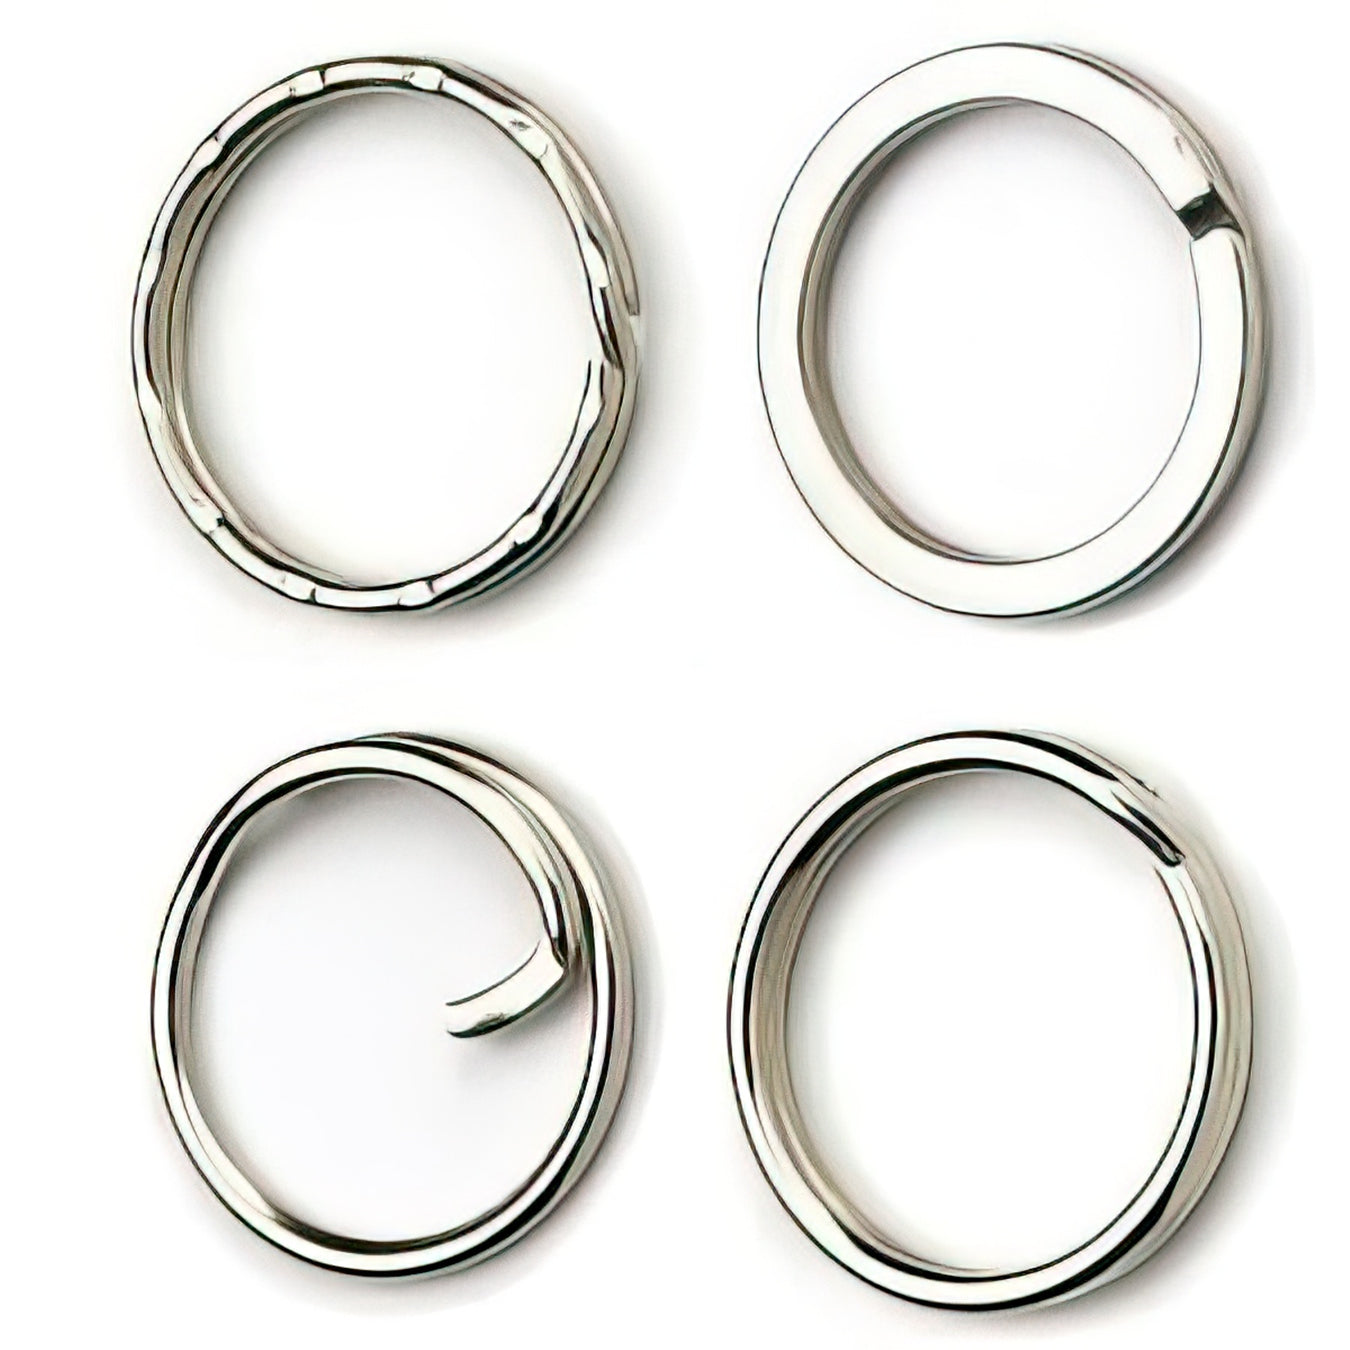 Split Rings & Key Rings